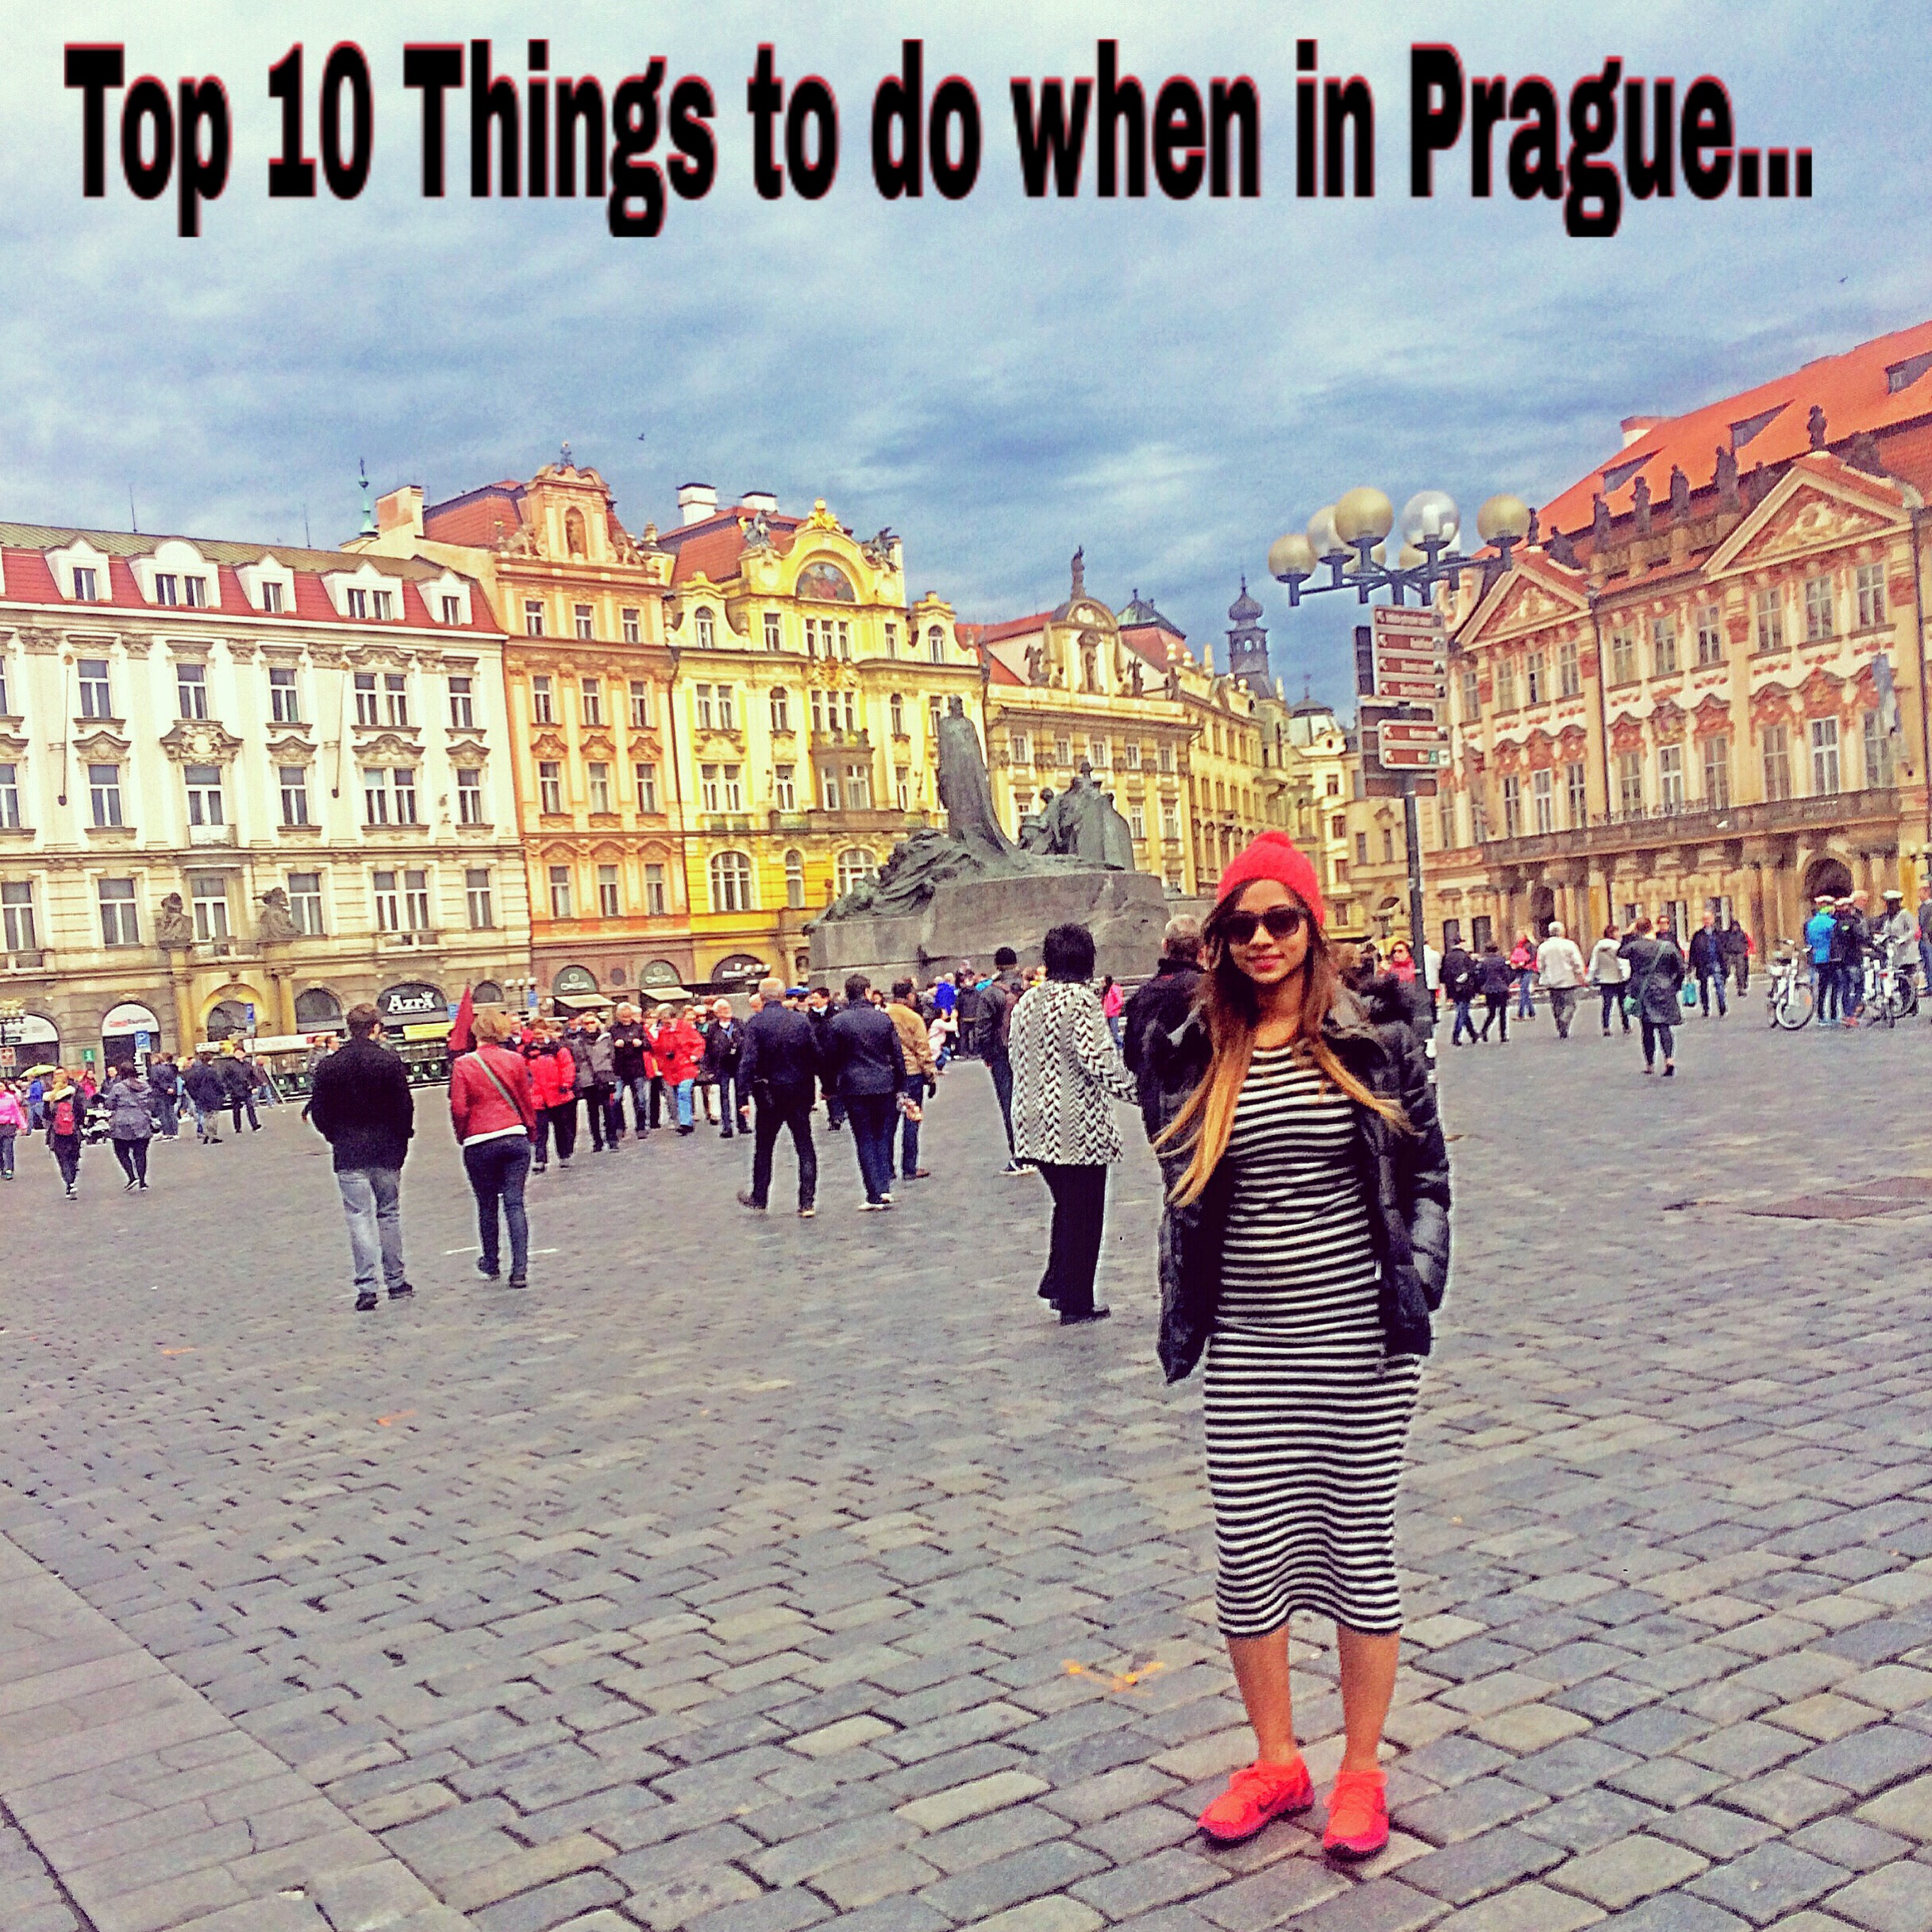 PRAGUE – Top 10 things to do in Prague